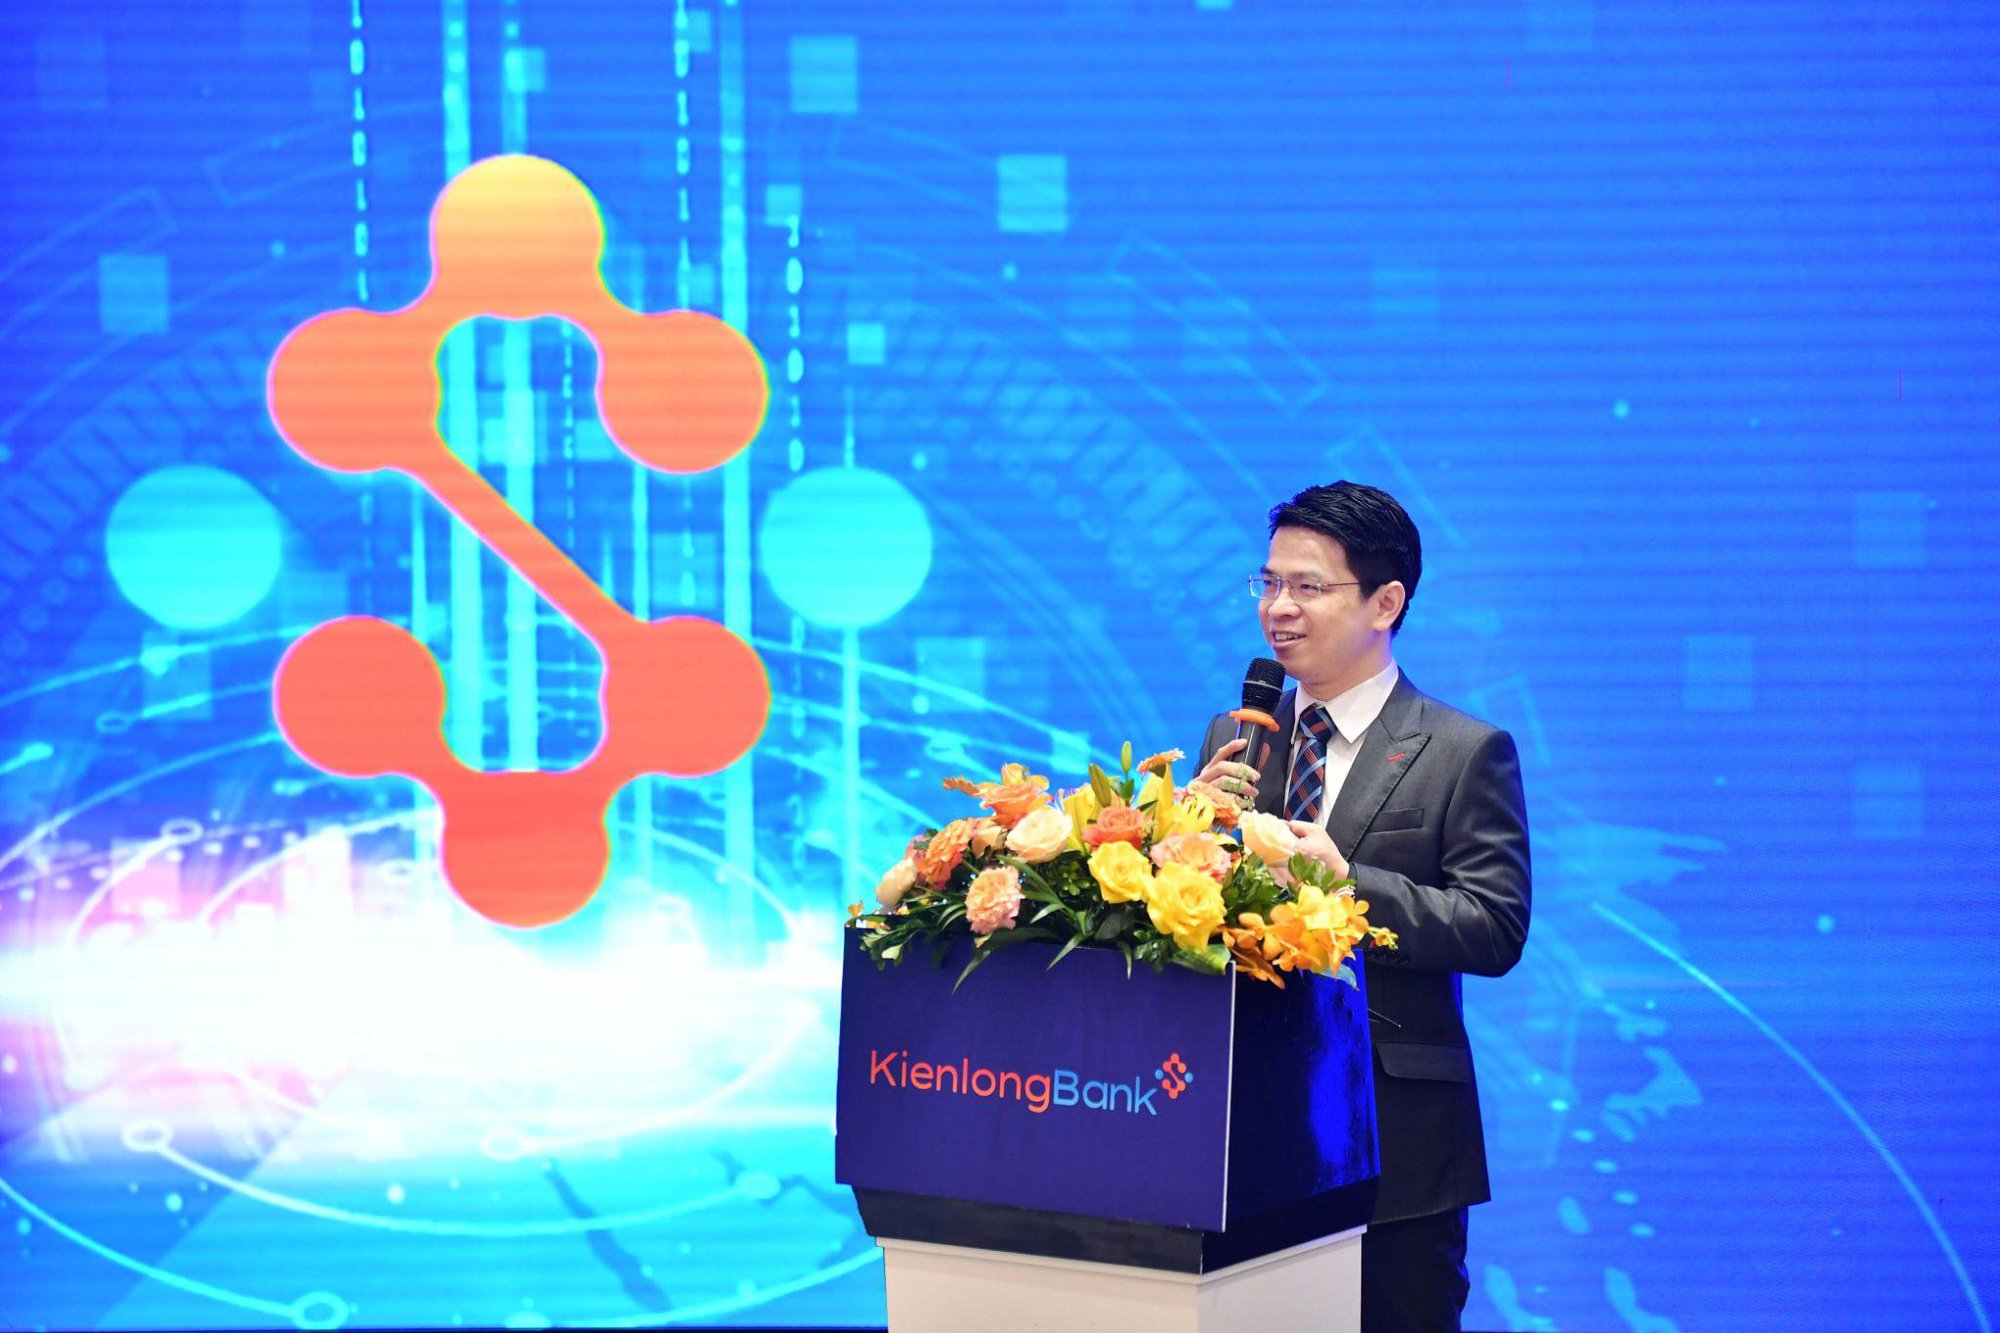 KienlongBank vận hành chính thức hệ thống ngân hàng lõi mới hiện đại, nâng cao chất lượng dịch vụ ngân hàng - Ảnh 1.